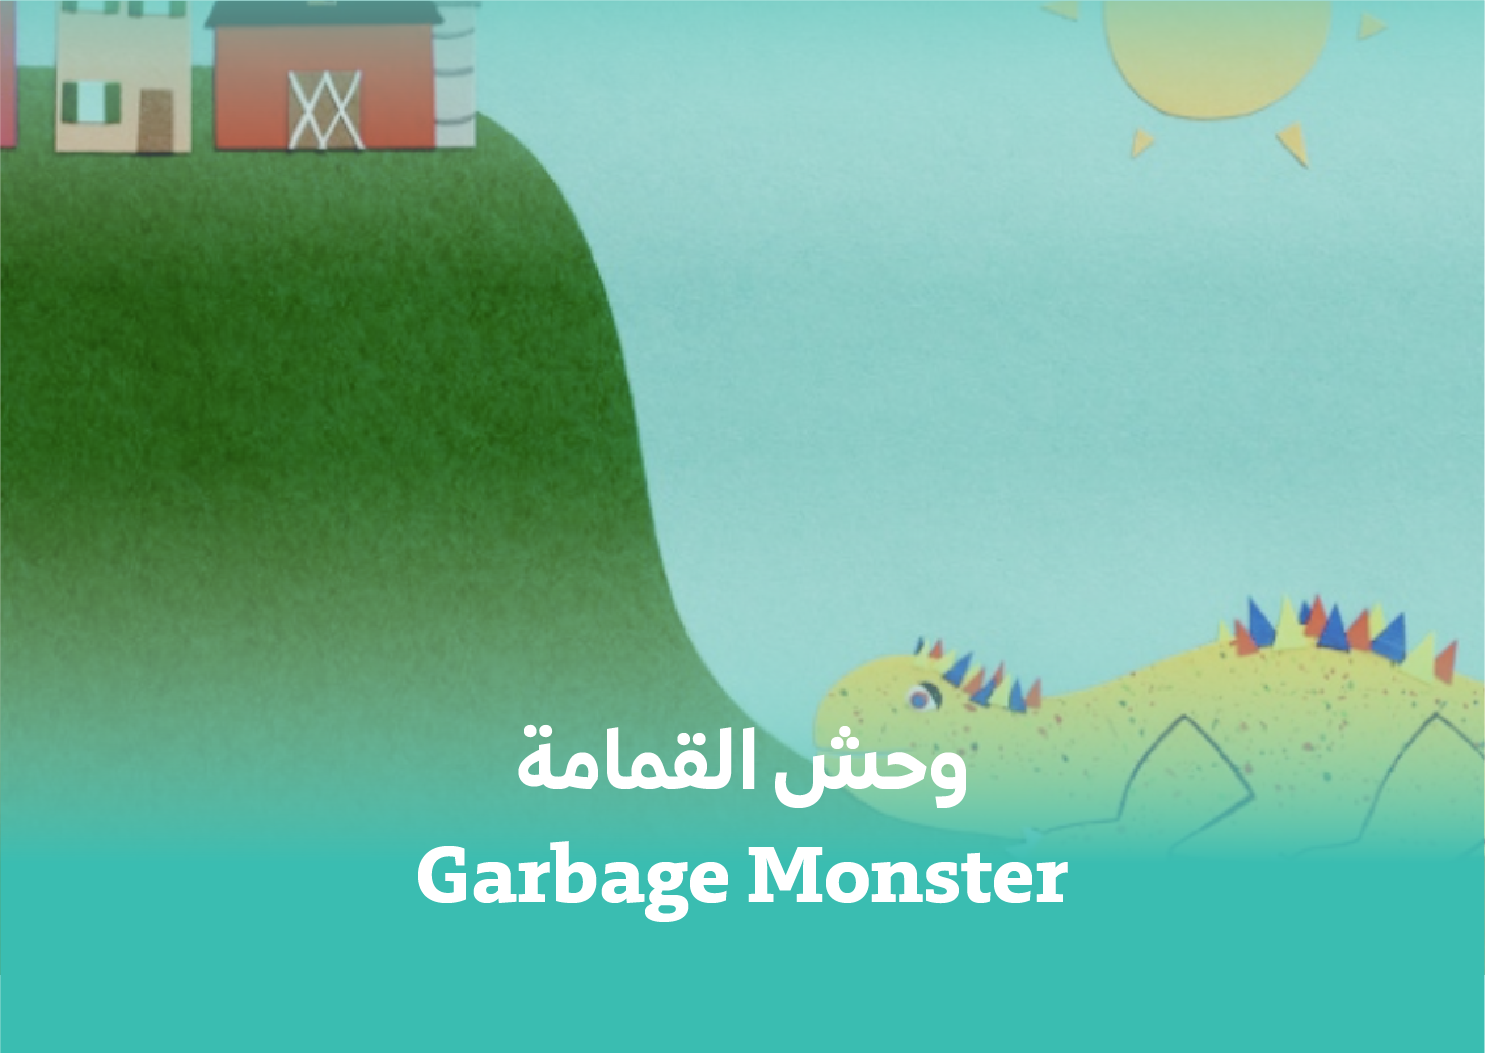 Garbage Monster